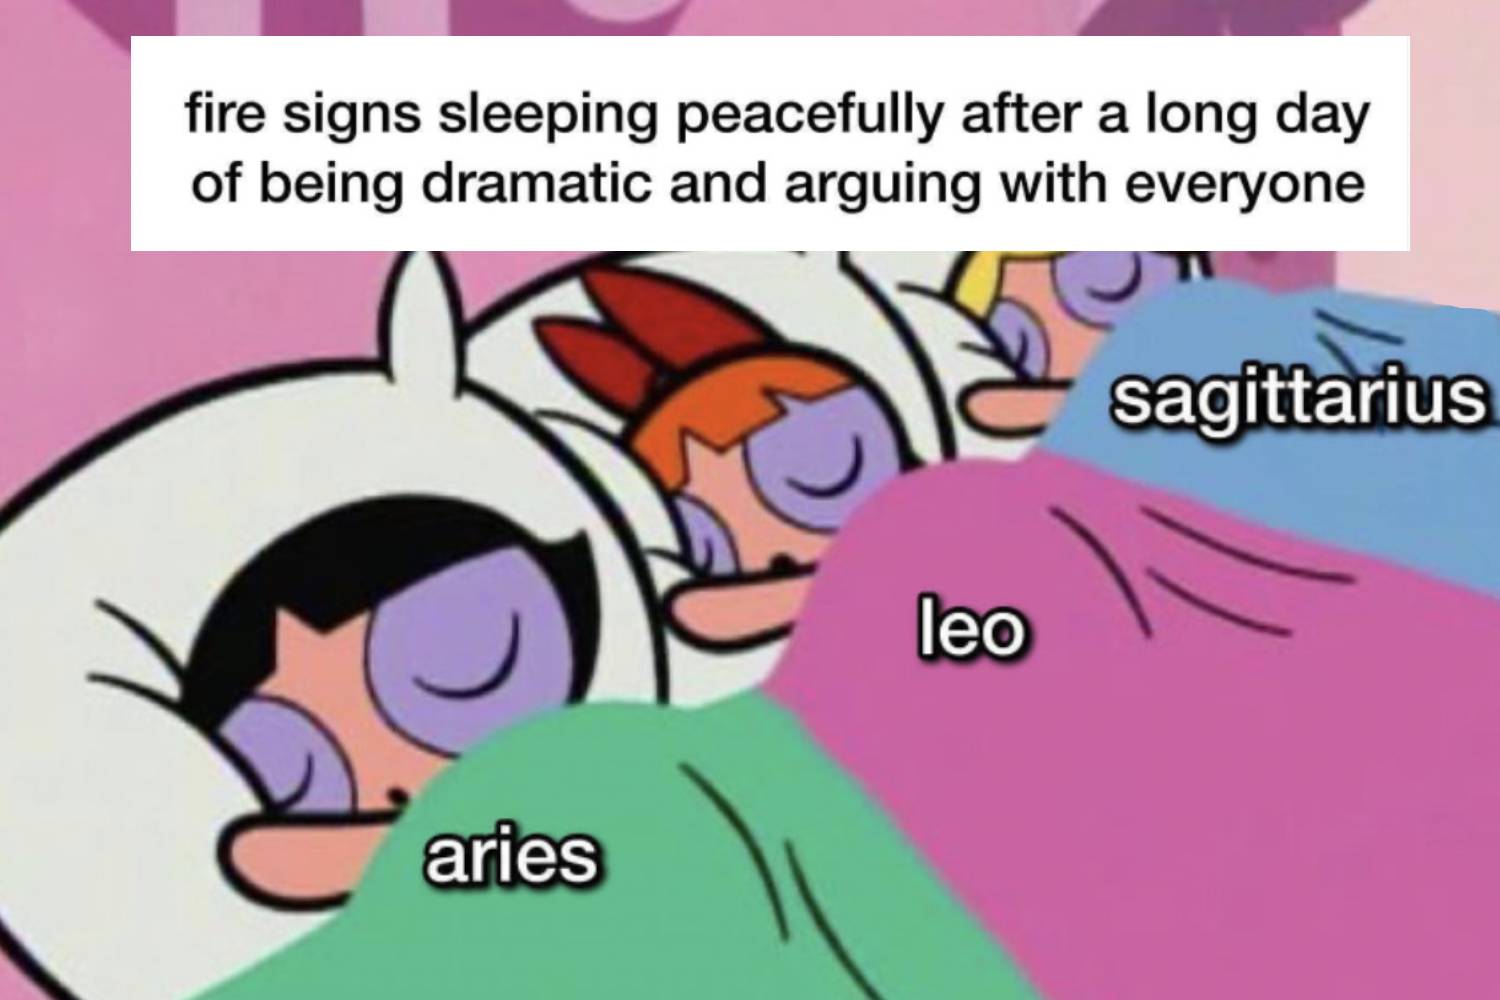 Astrology Memes